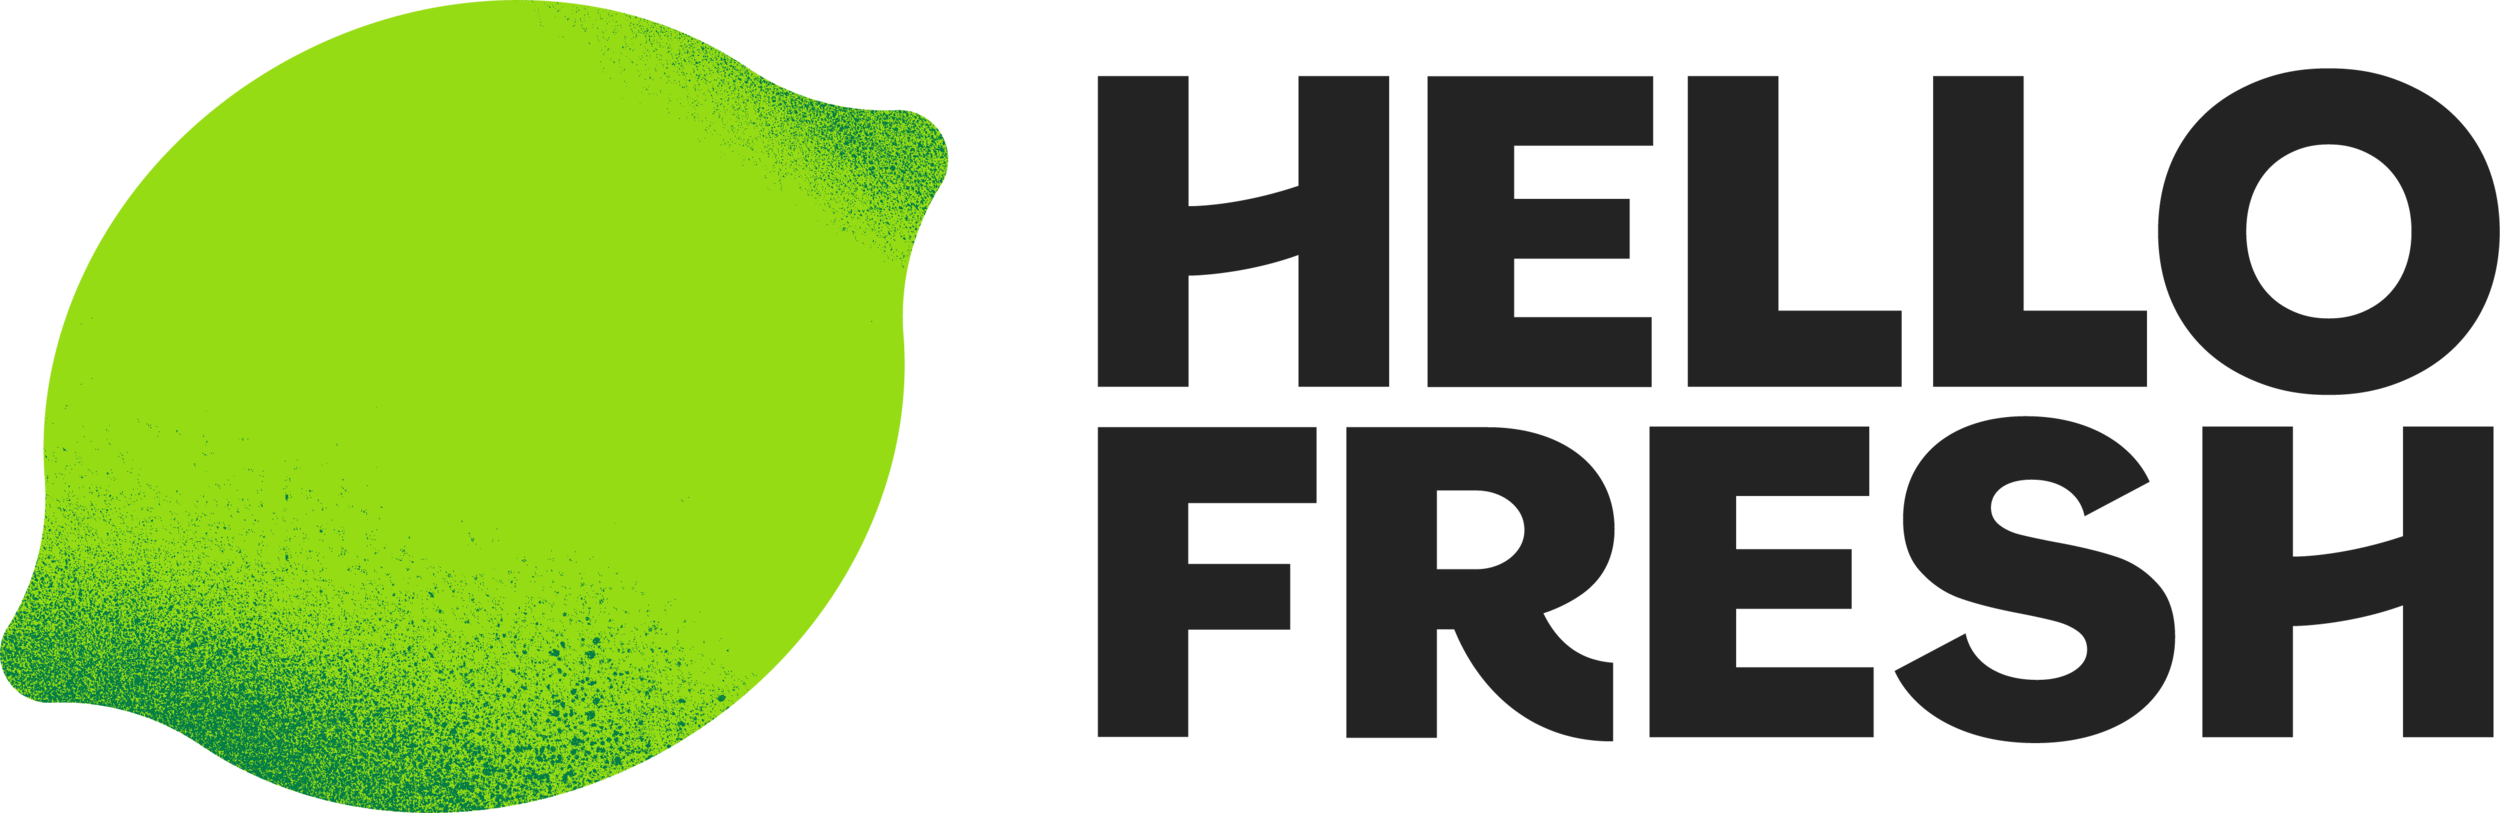 HelloFresh-logo-a2a149bdc1548e071bb89411547914ca.png